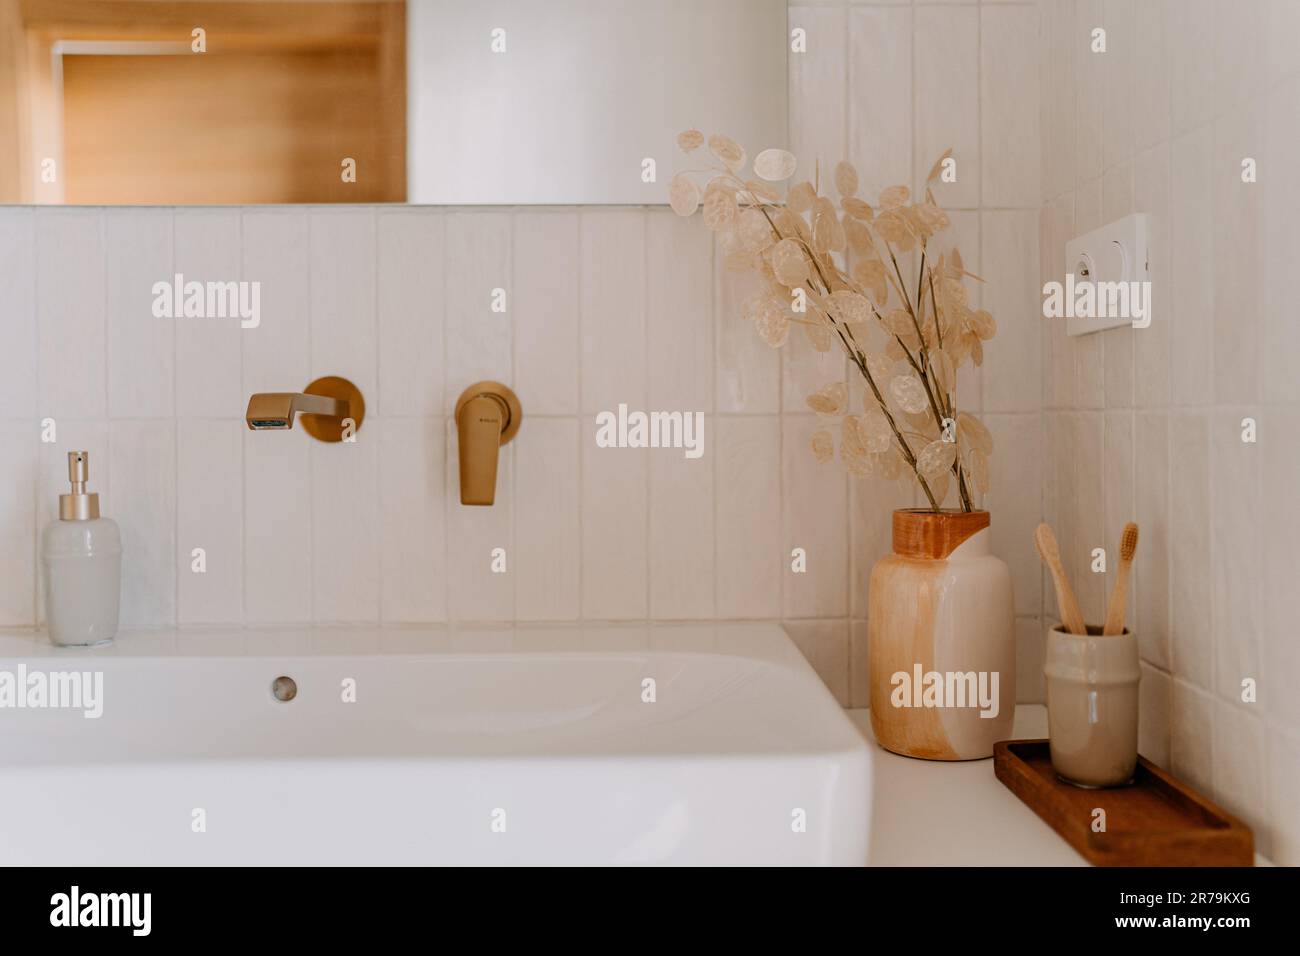 Eine schwarze matte Steckdose und ein Lichtschalter im Badezimmerspiegel  neben dem Wandwaschbecken, schwarzer Wasserhahn sichtbar Stockfotografie -  Alamy